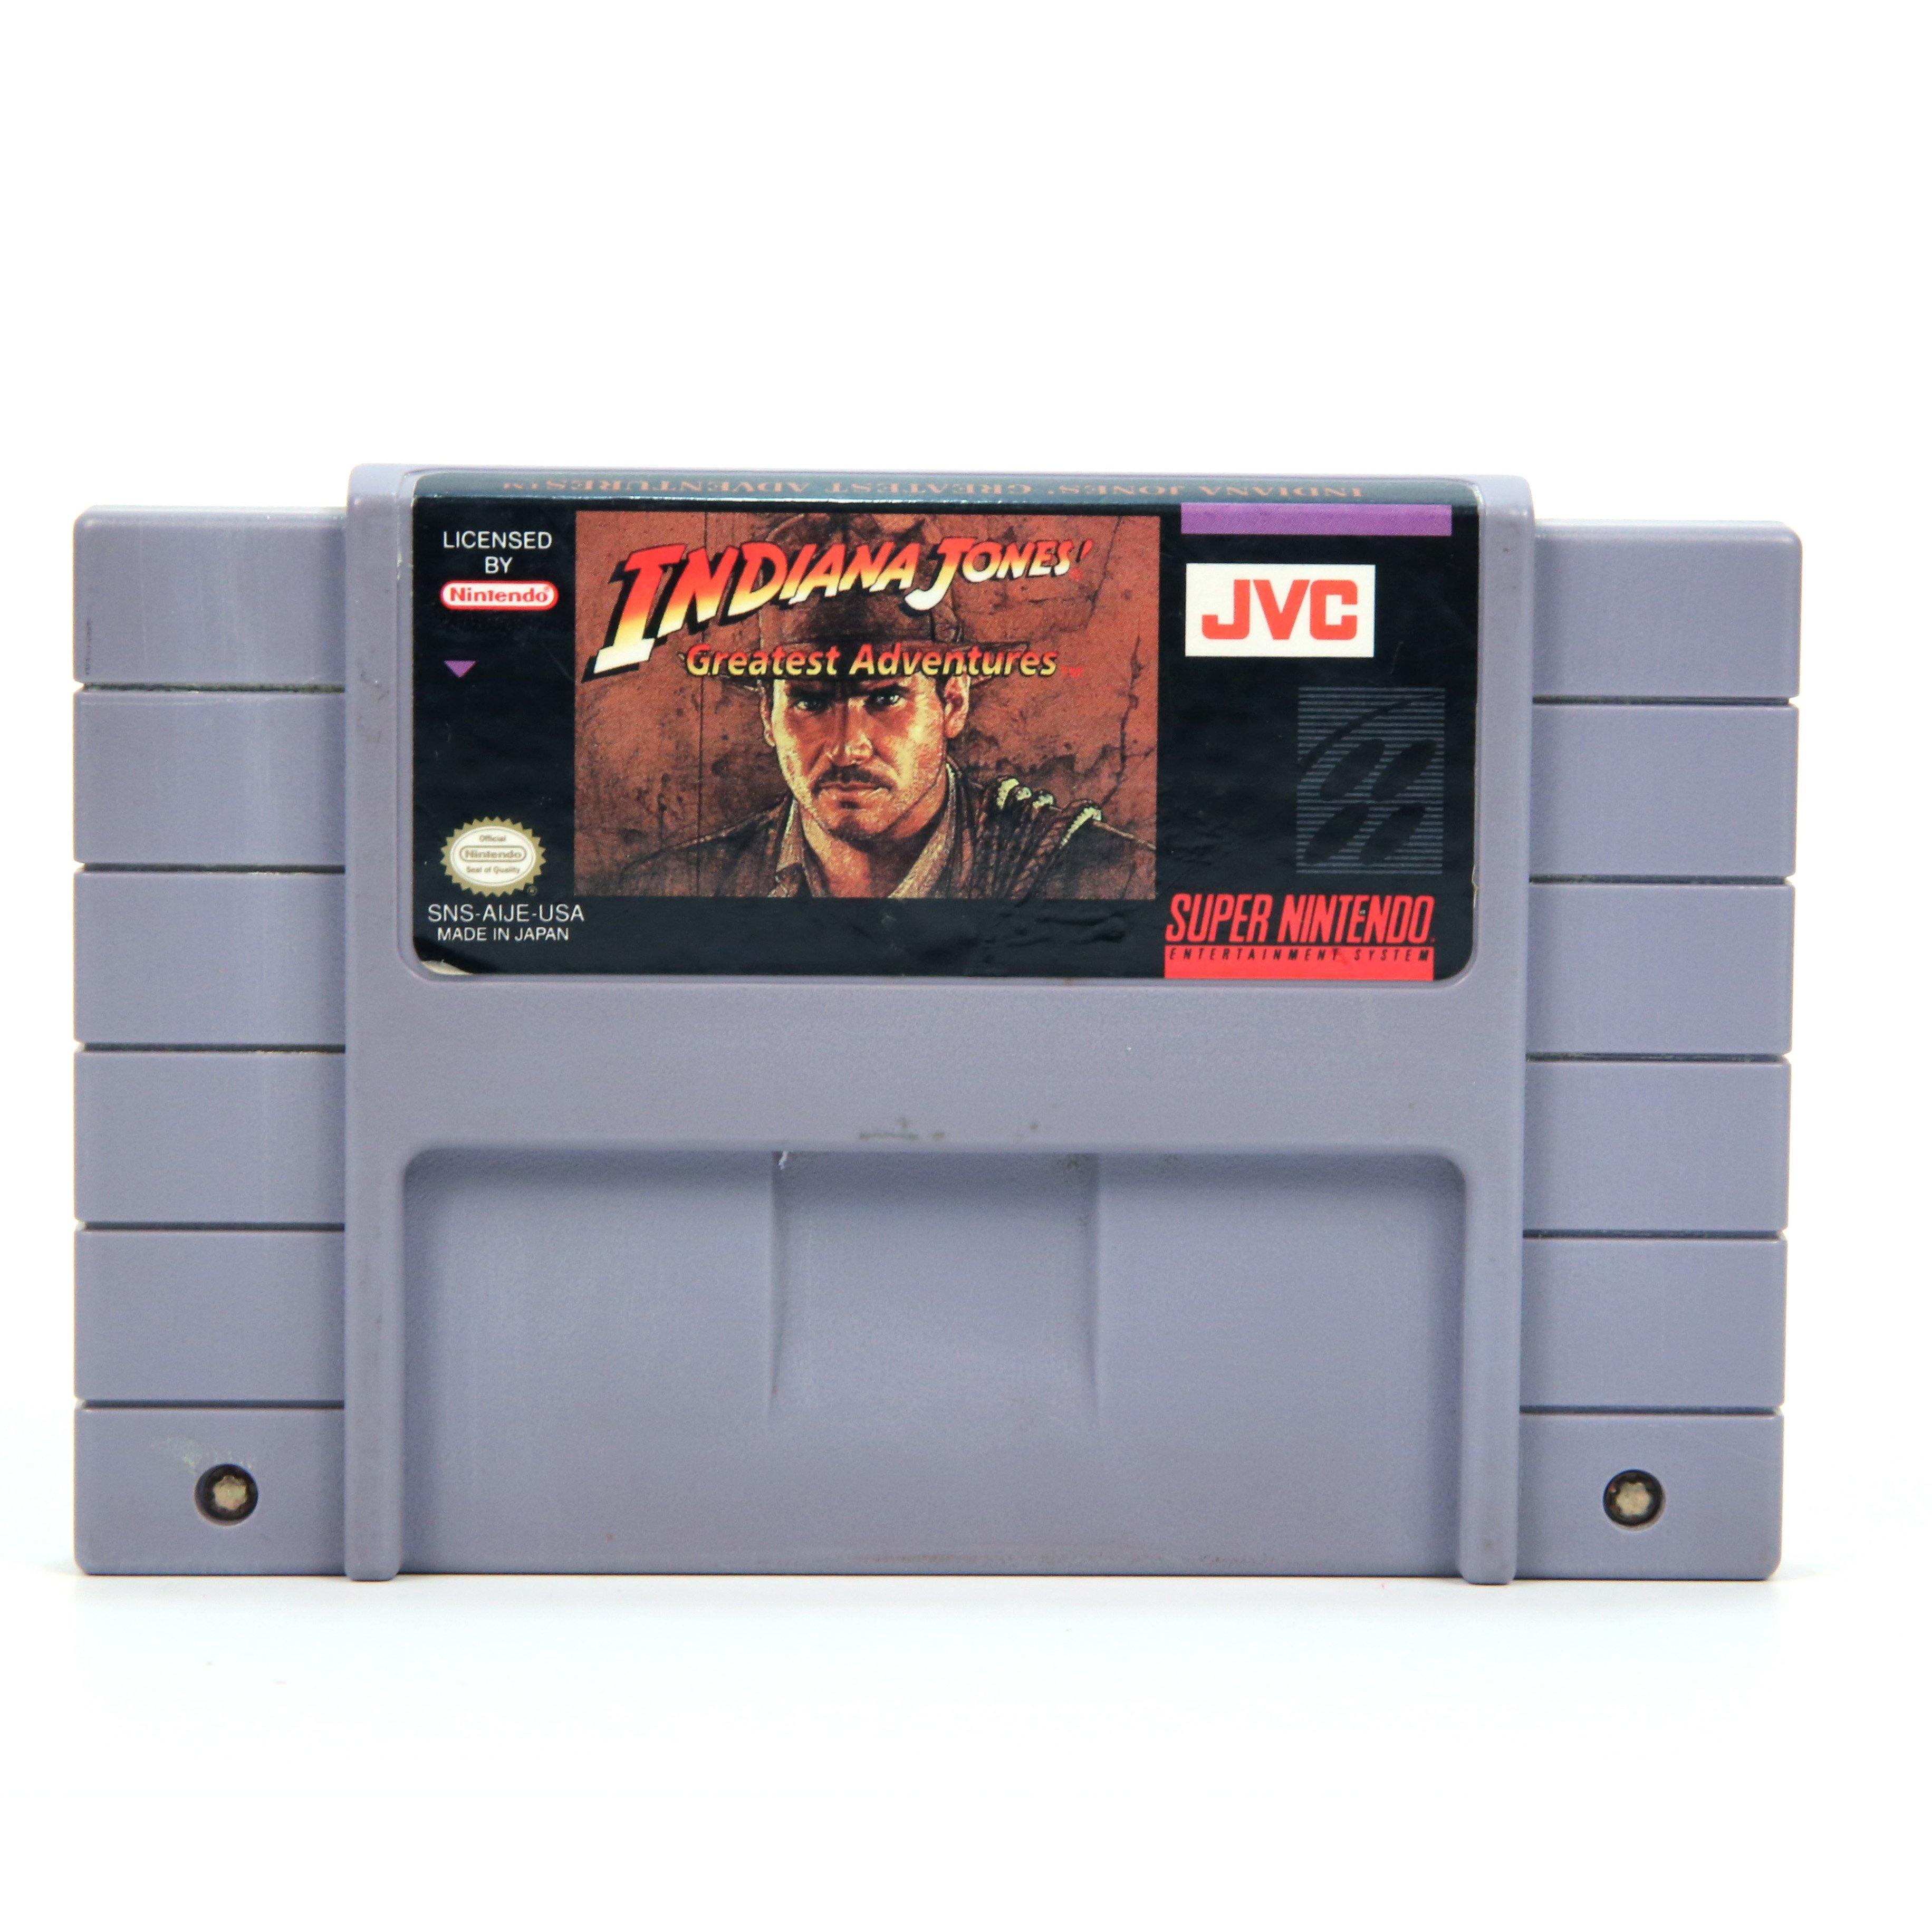 Indiana Jones' Greatest Adventures - Super Nintendo